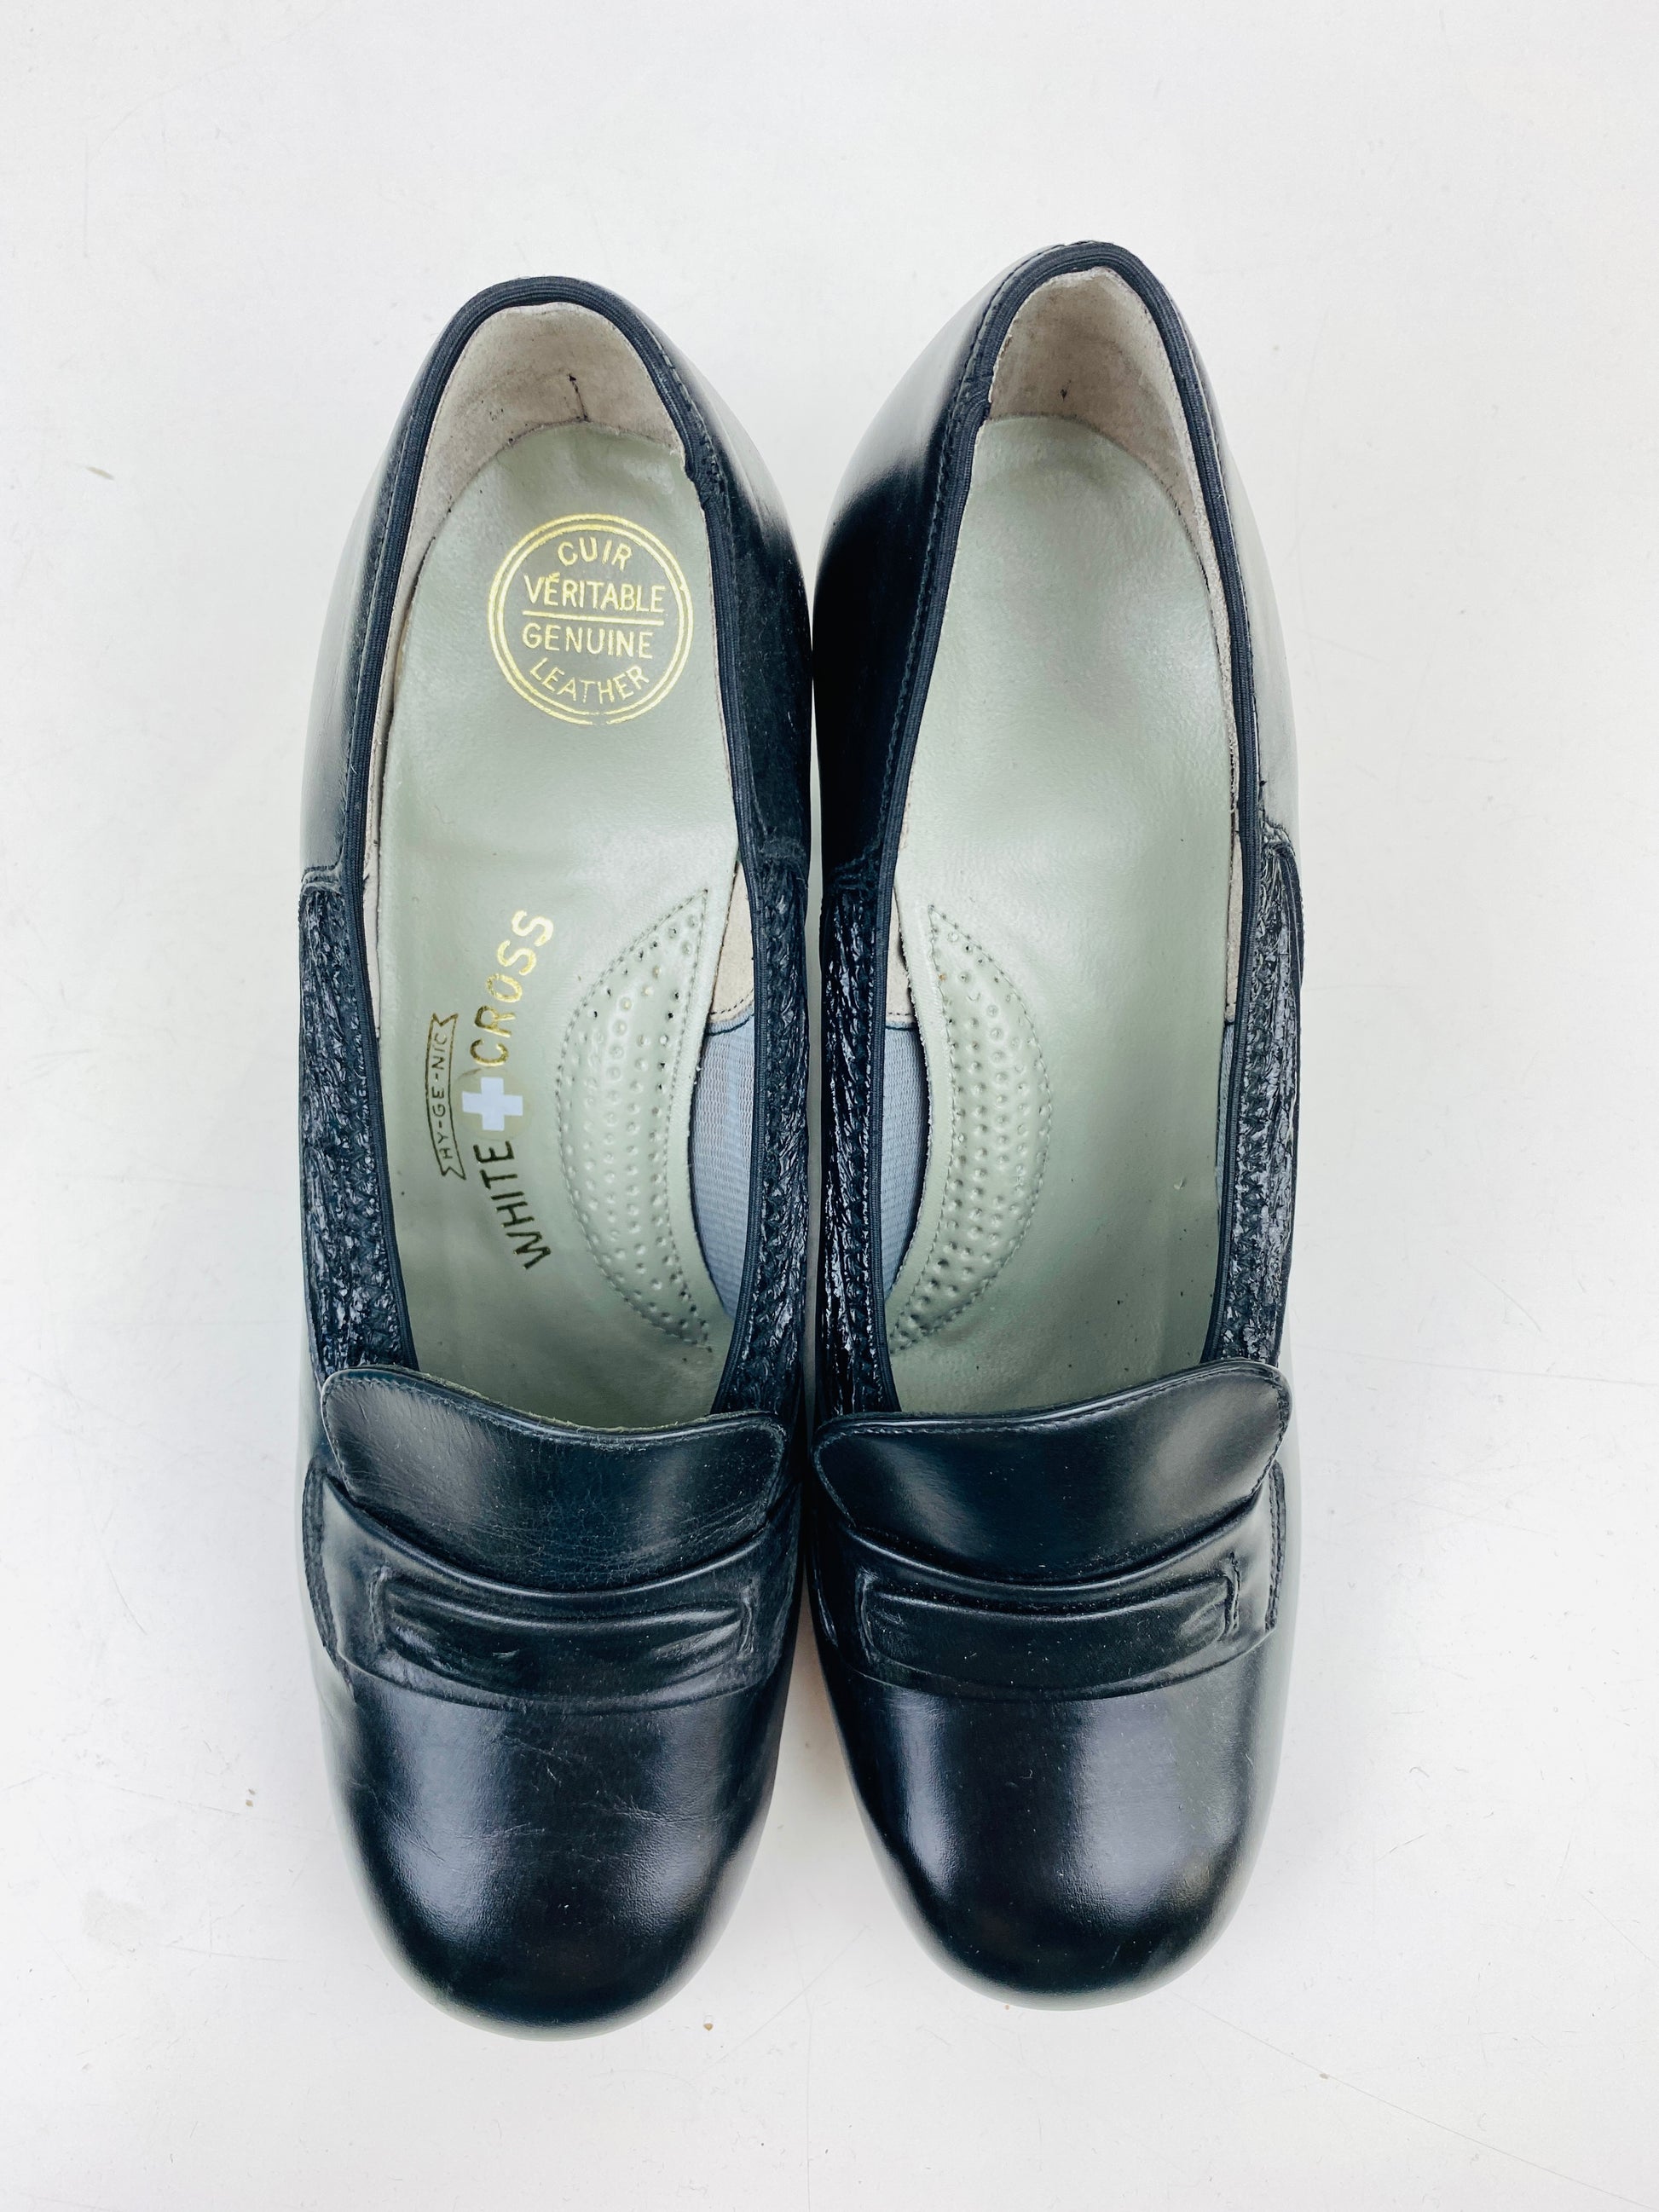 Vintage Deadstock Shoes, Women's 1980s Black Leather Cuban Heel Pumps, NOS, 7740